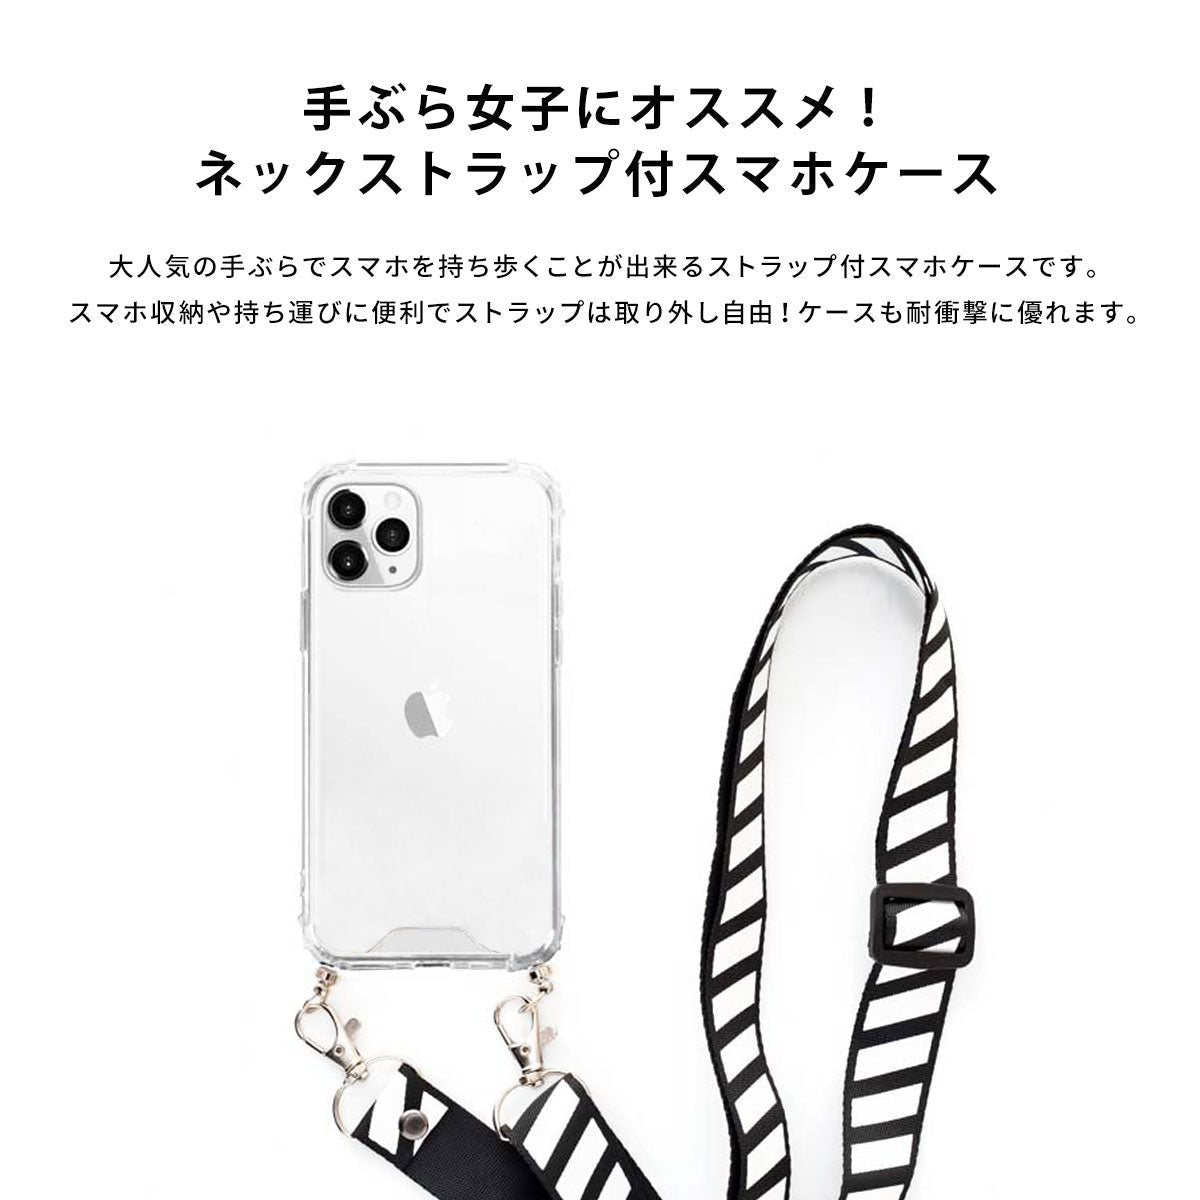 【スマホショルダー】ネックストラップ スマホケース  iPhone13 iPone12 かわいい おしゃれ  ネックストラップ付き モルモット 名入れ